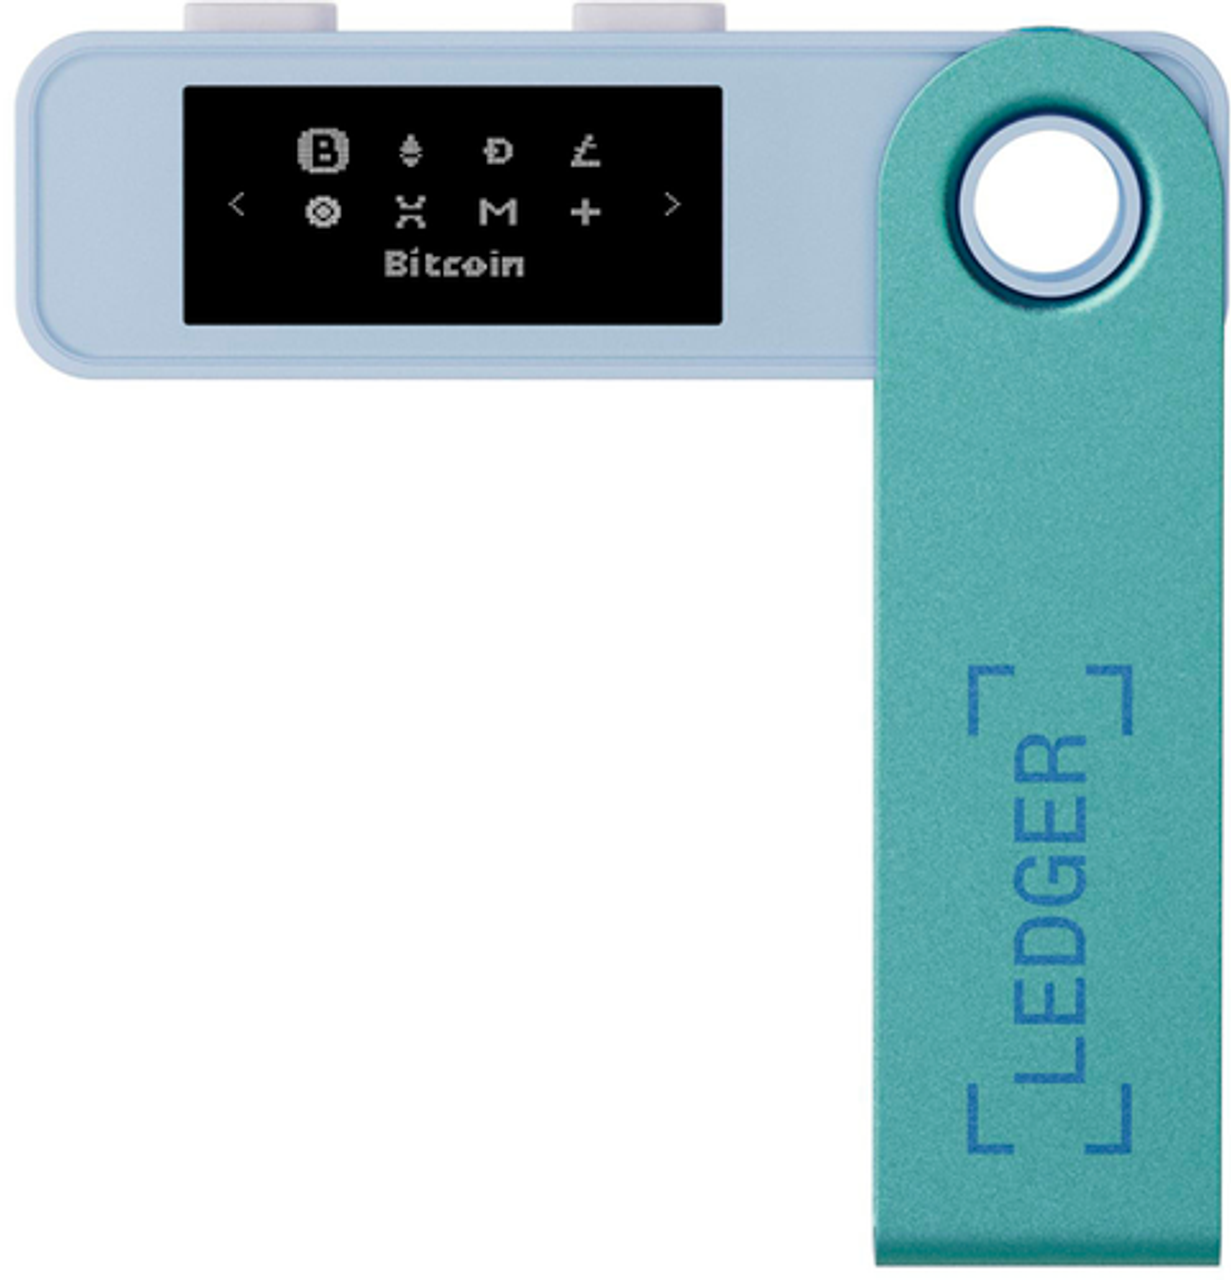 Ledger - Nano S Plus Crypto Hardware Wallet - Pastel Green